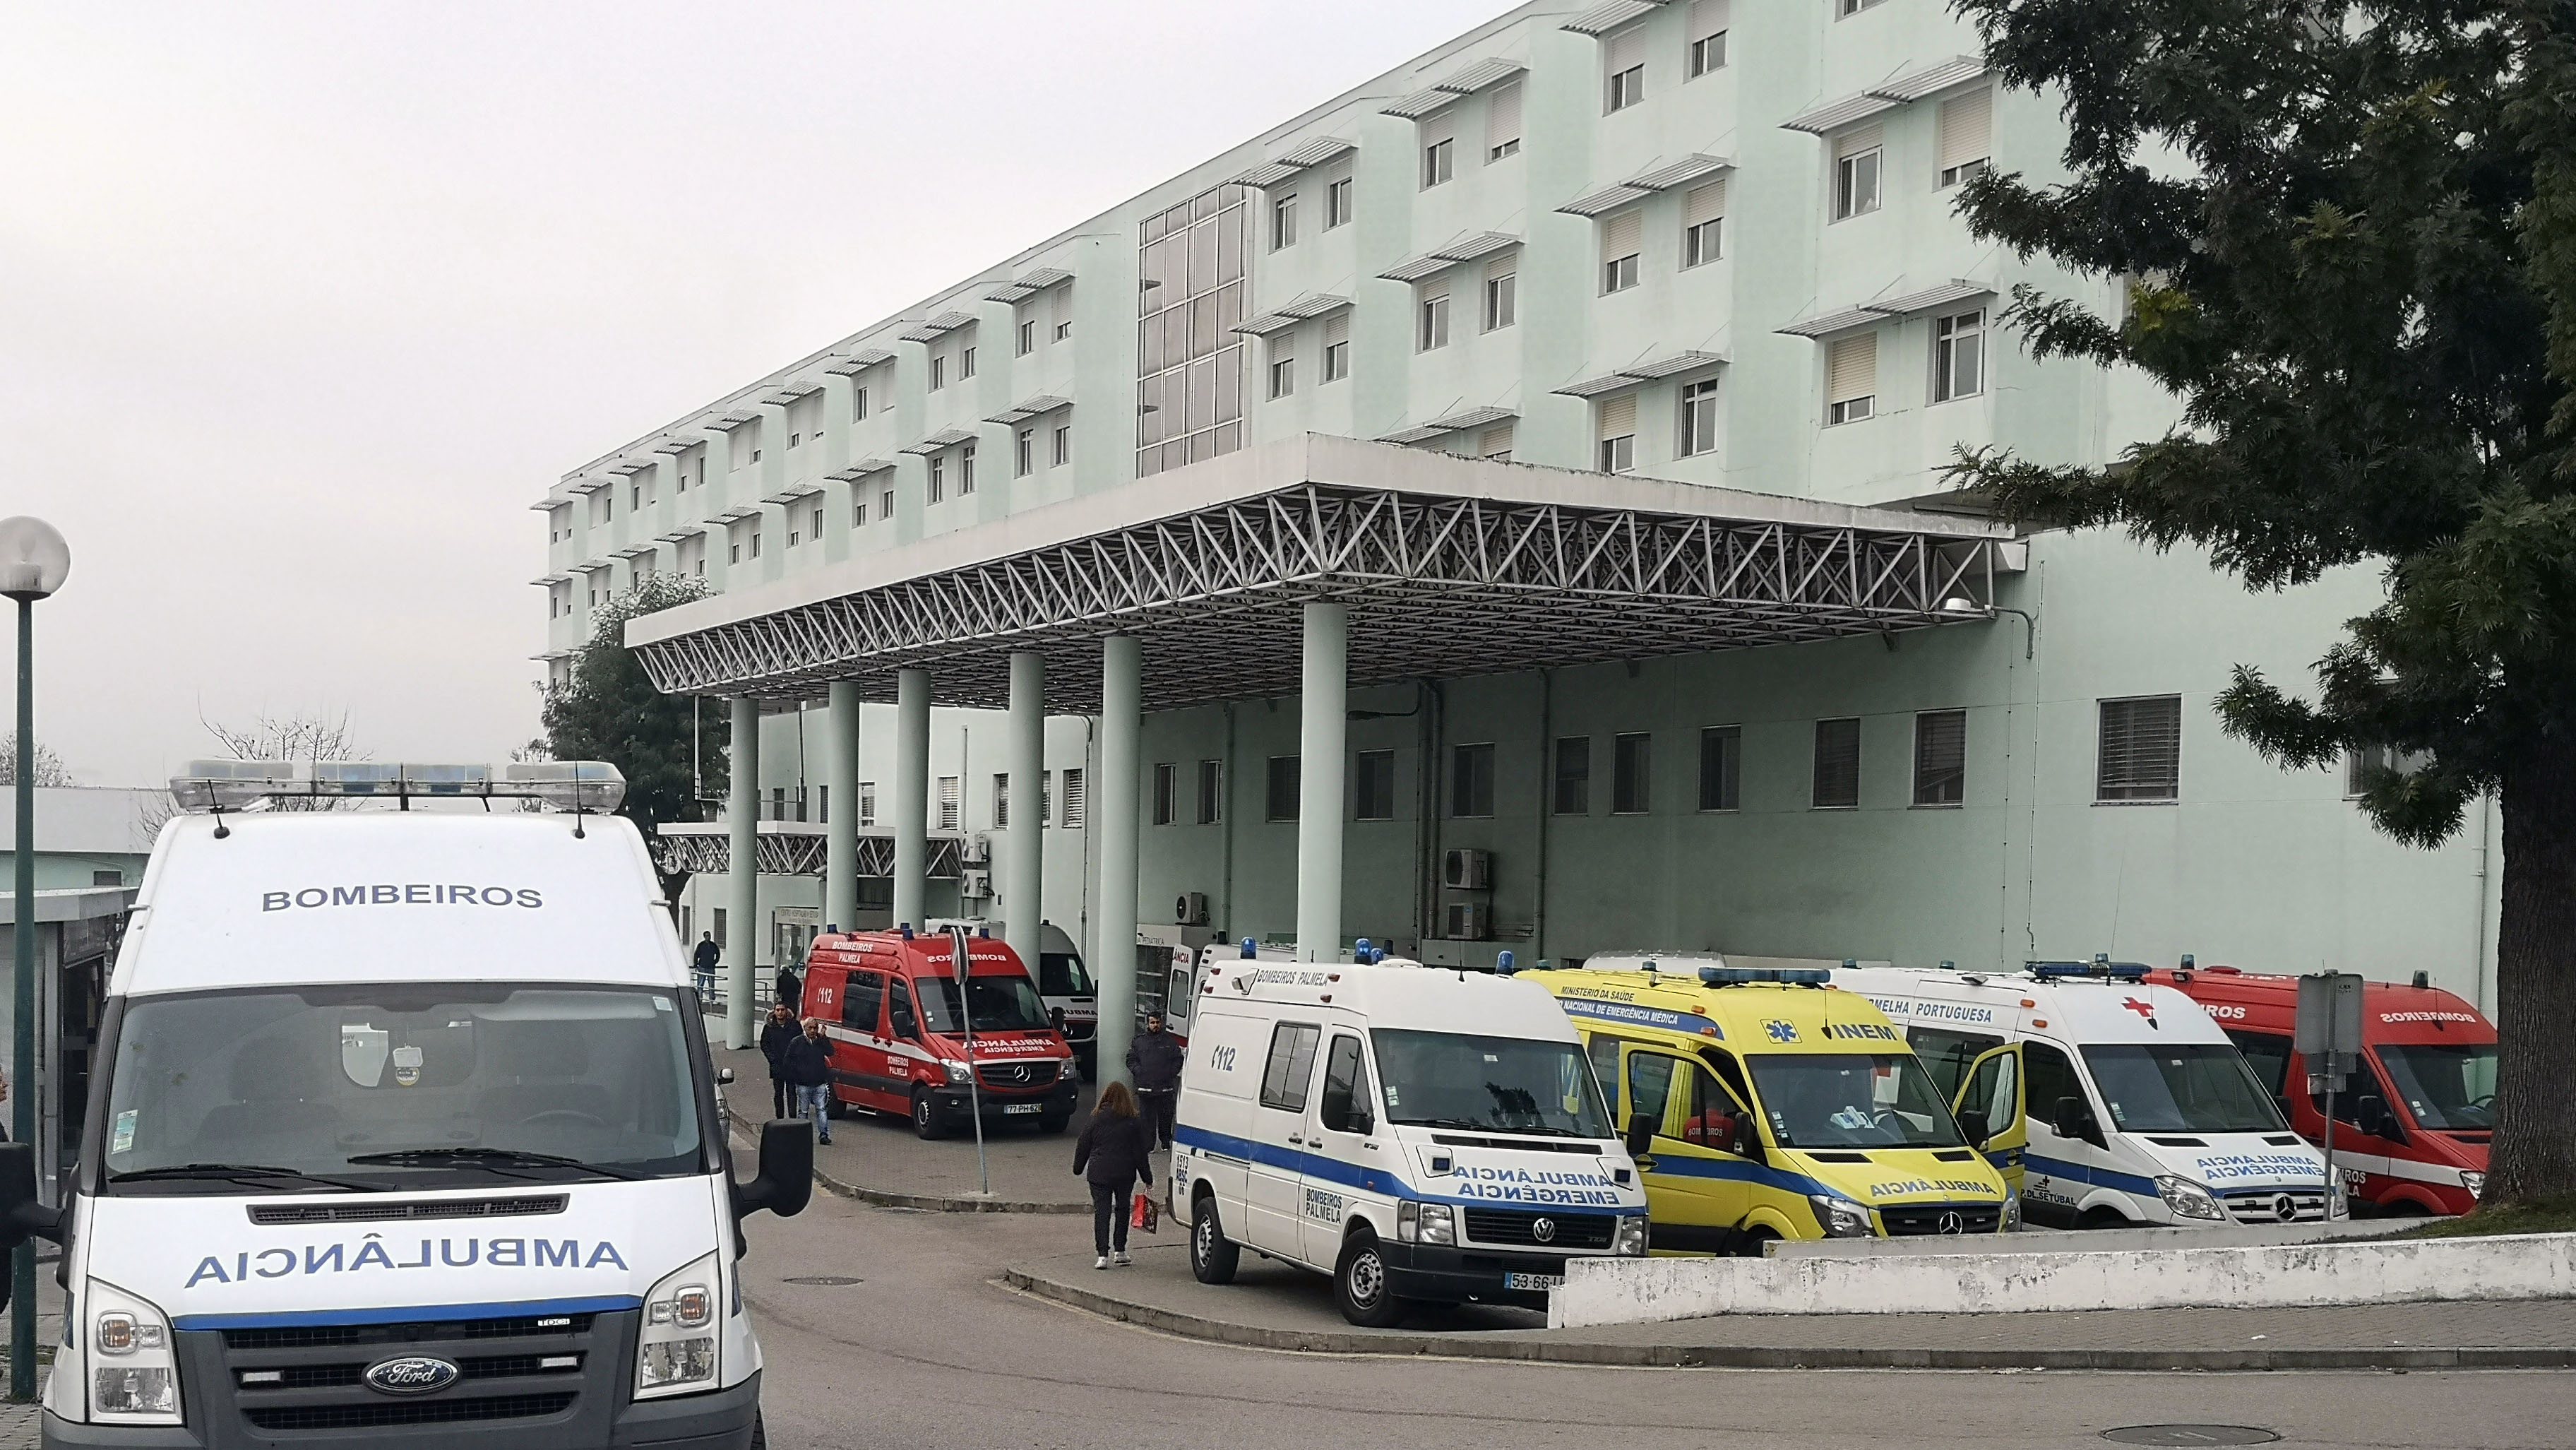 Três das vítimas foram levadas para o Hospital de São Bernardo